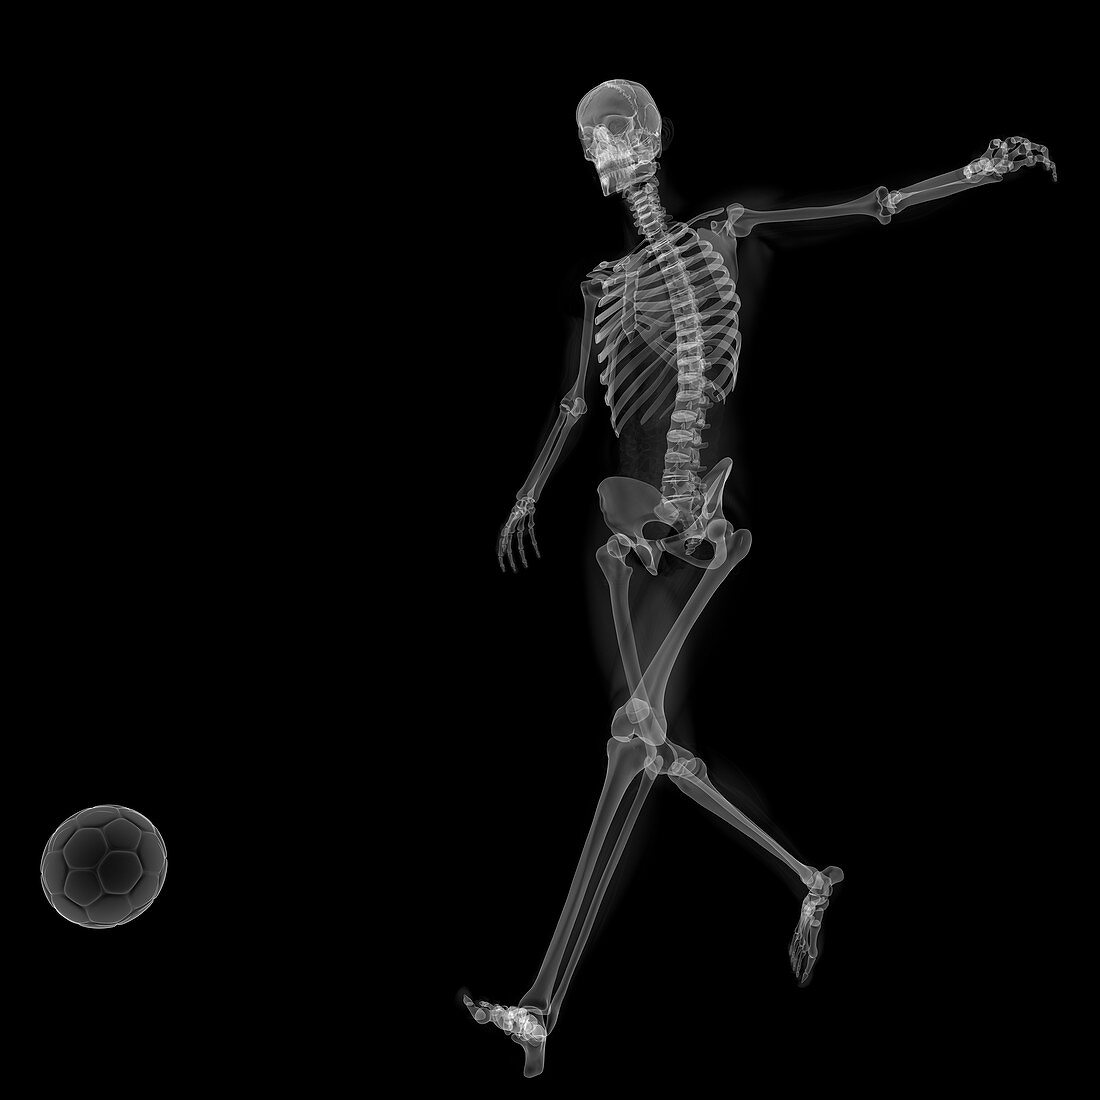 Skeleton playing football,artwork